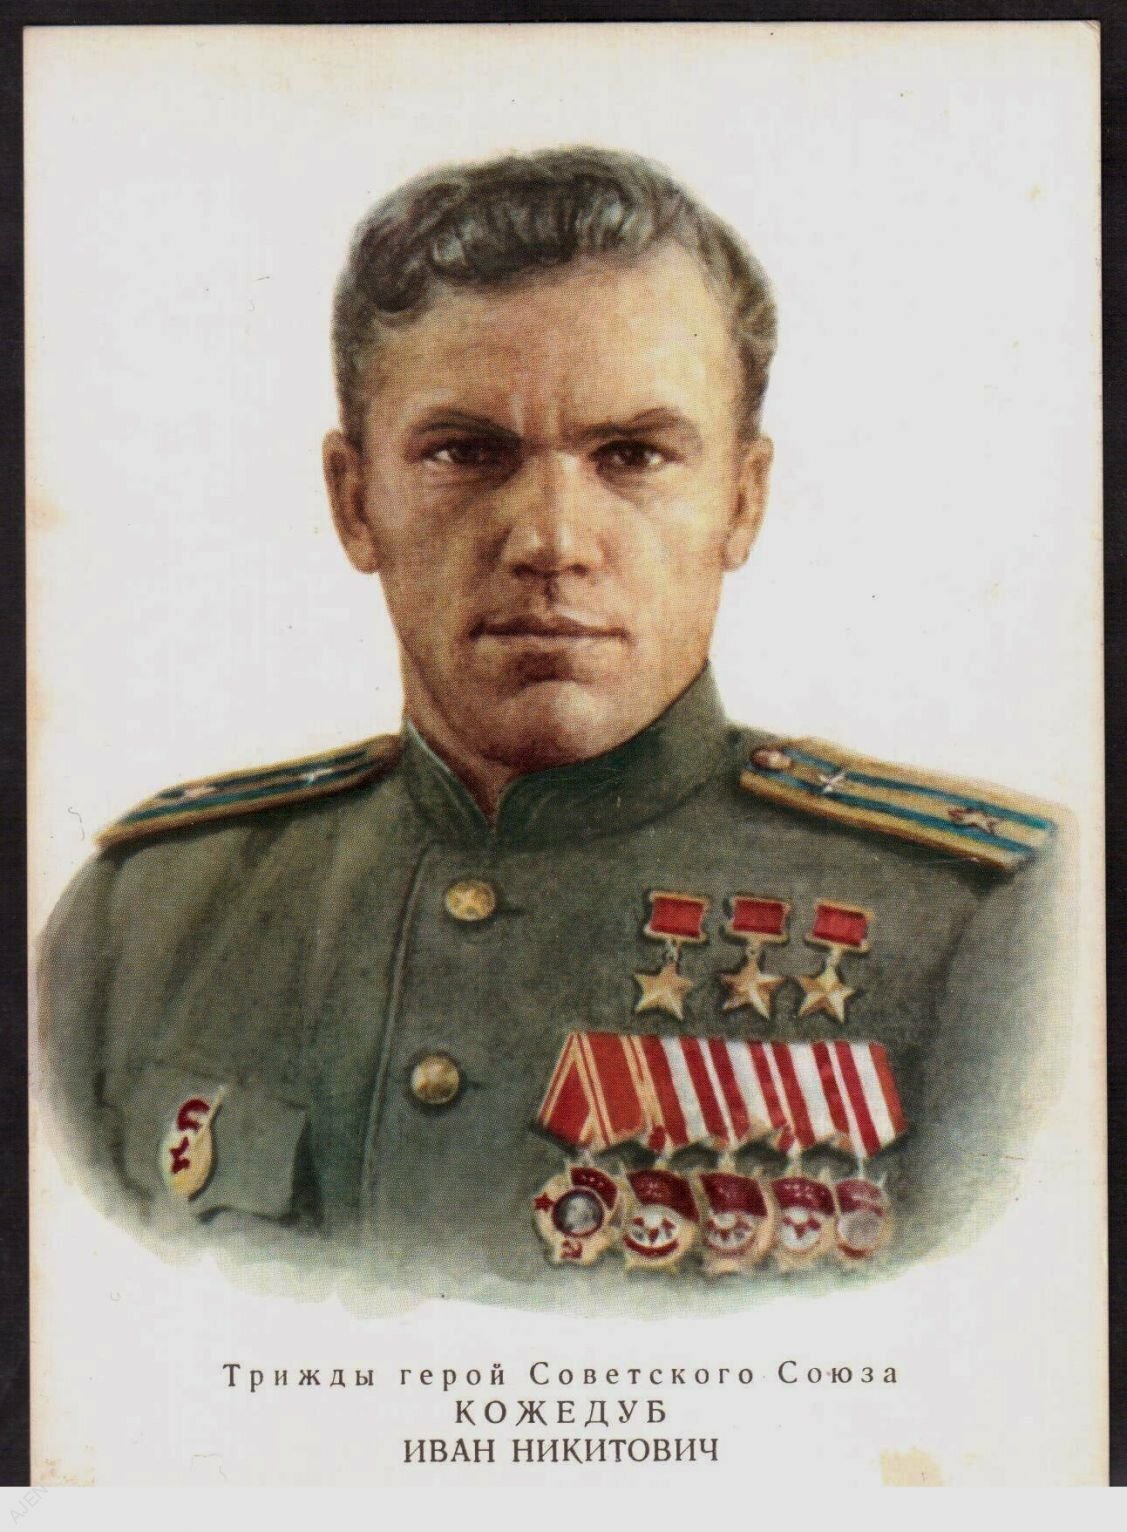 Легендарные герои советского союза. Кожедуб герой советского Союза. Трижды гкрои советского Союза.